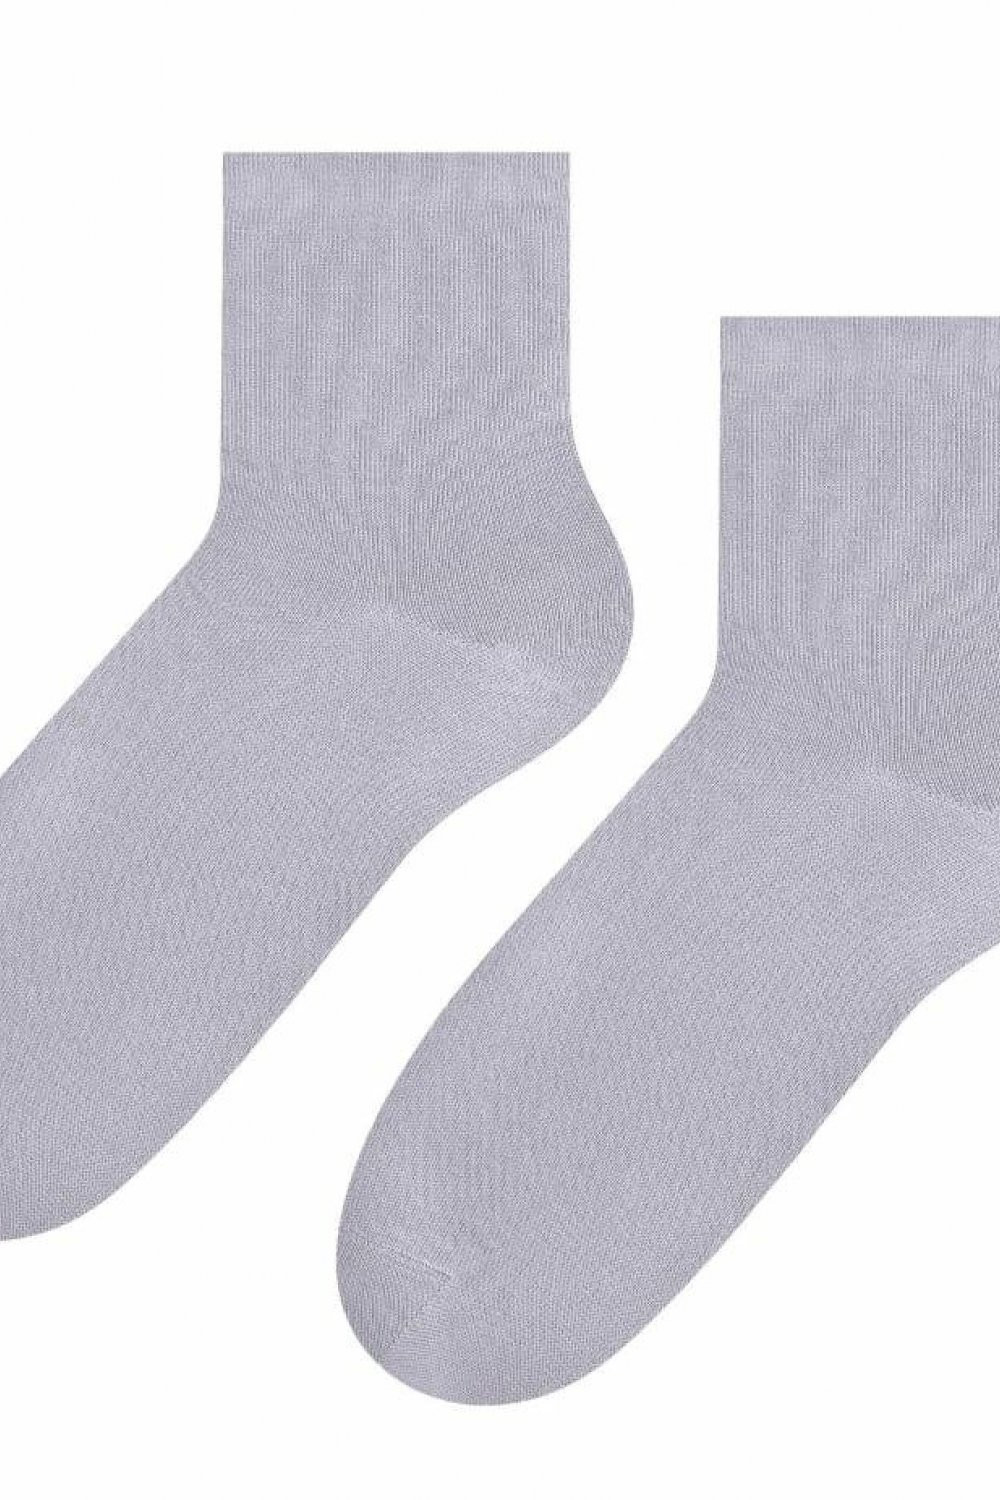 Dámské ponožky 037 grey - Steven šedá 35/37